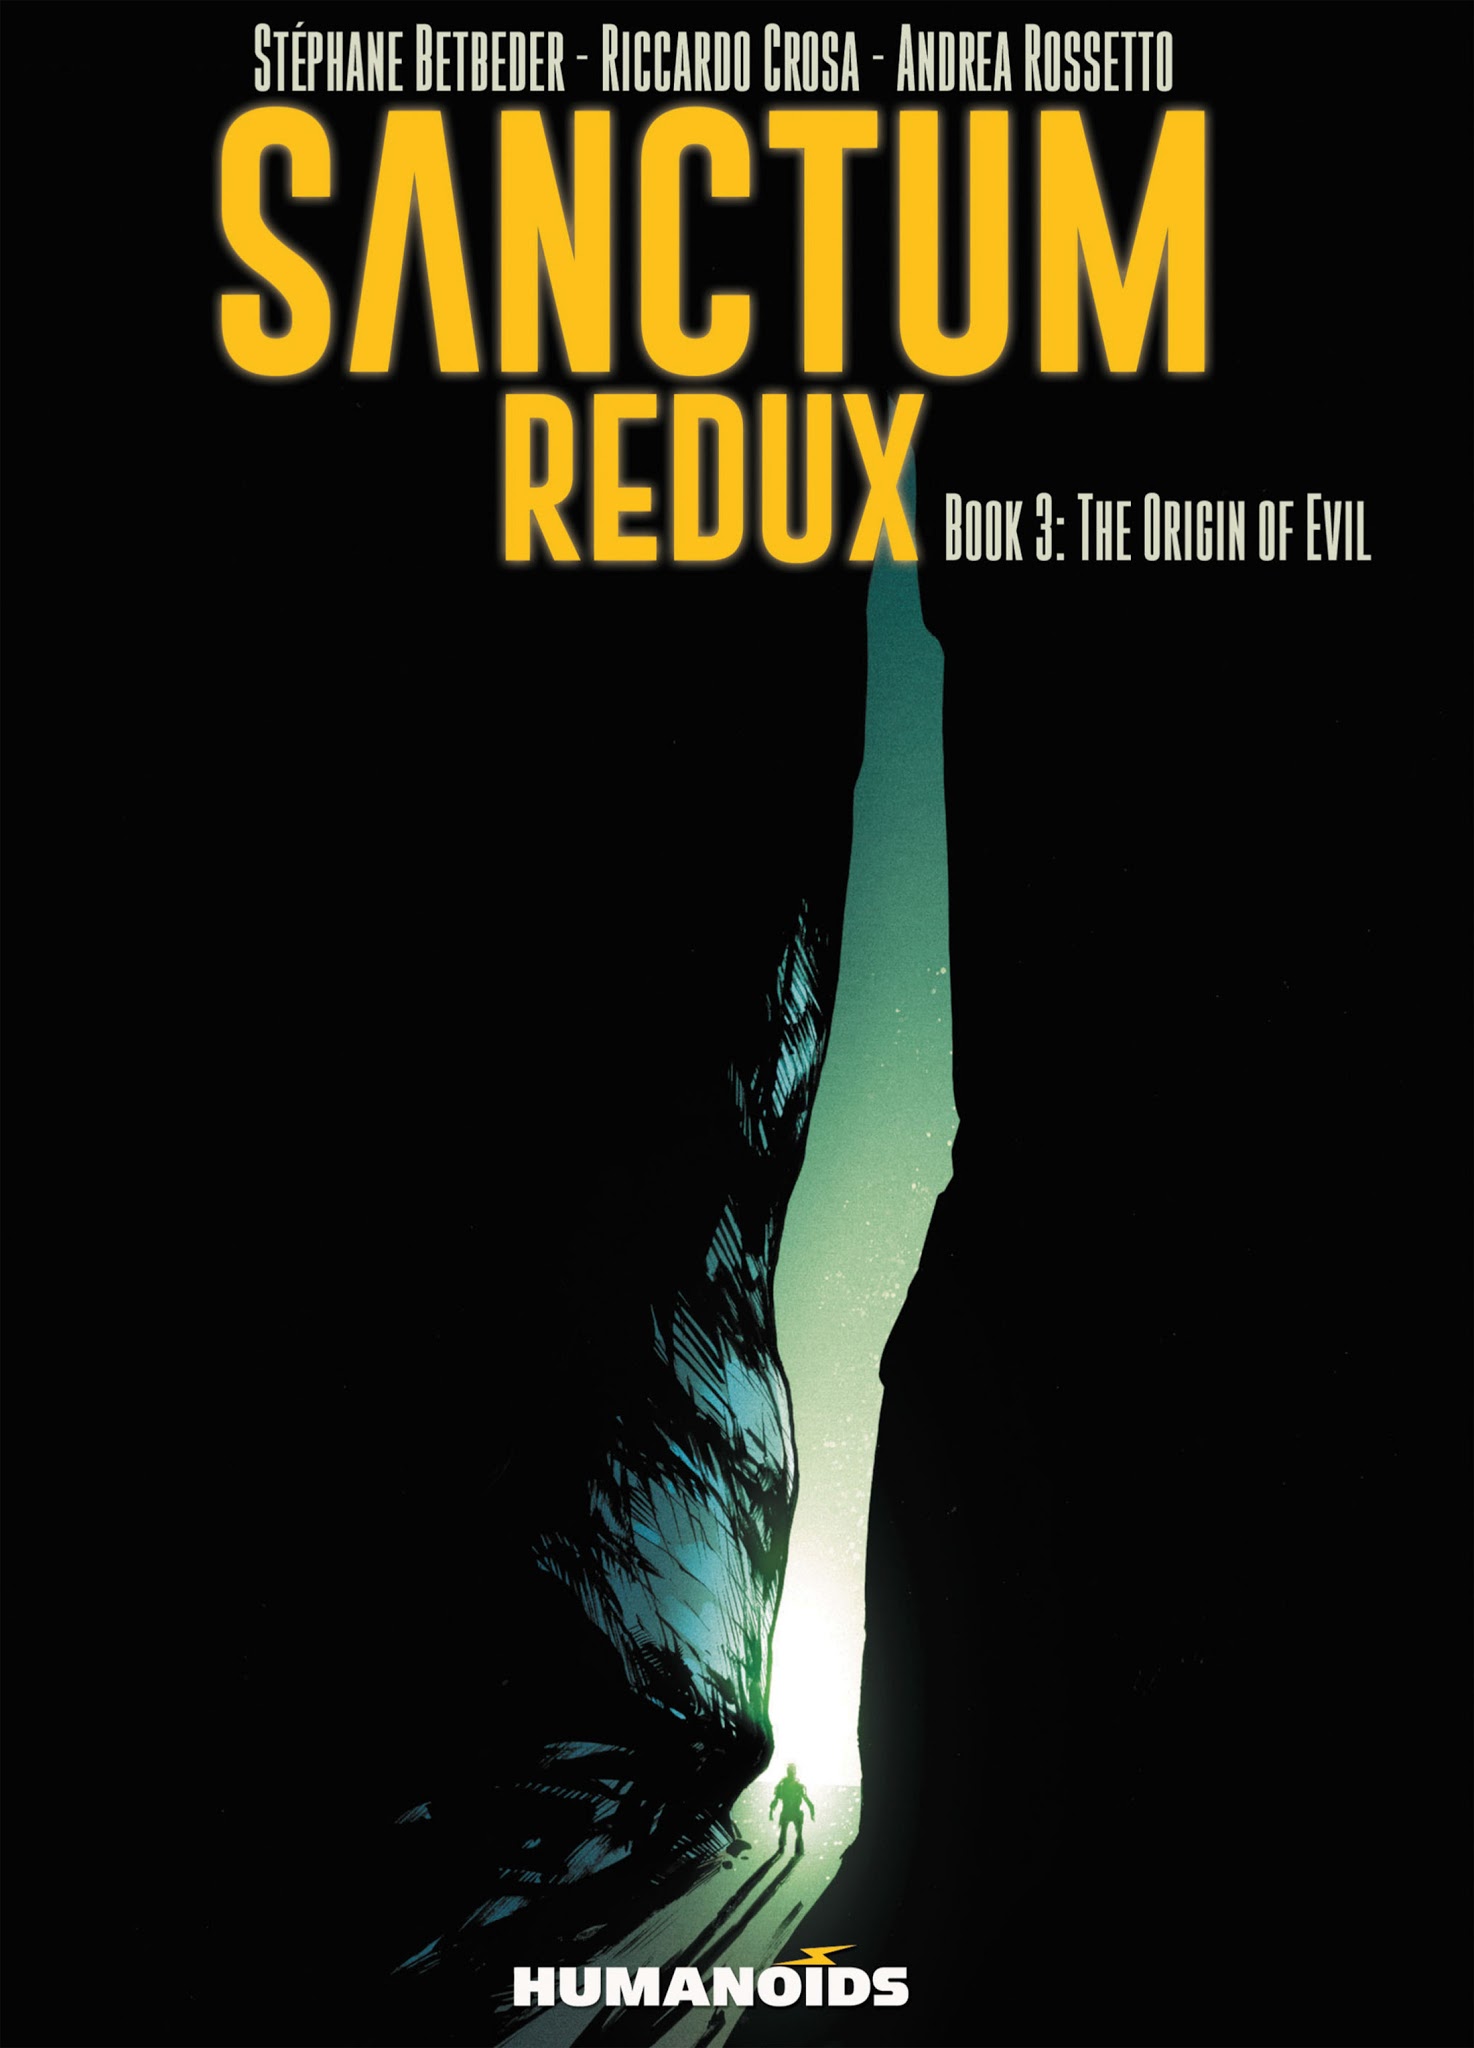 Read online Sanctum Redux comic -  Issue #3 - 1